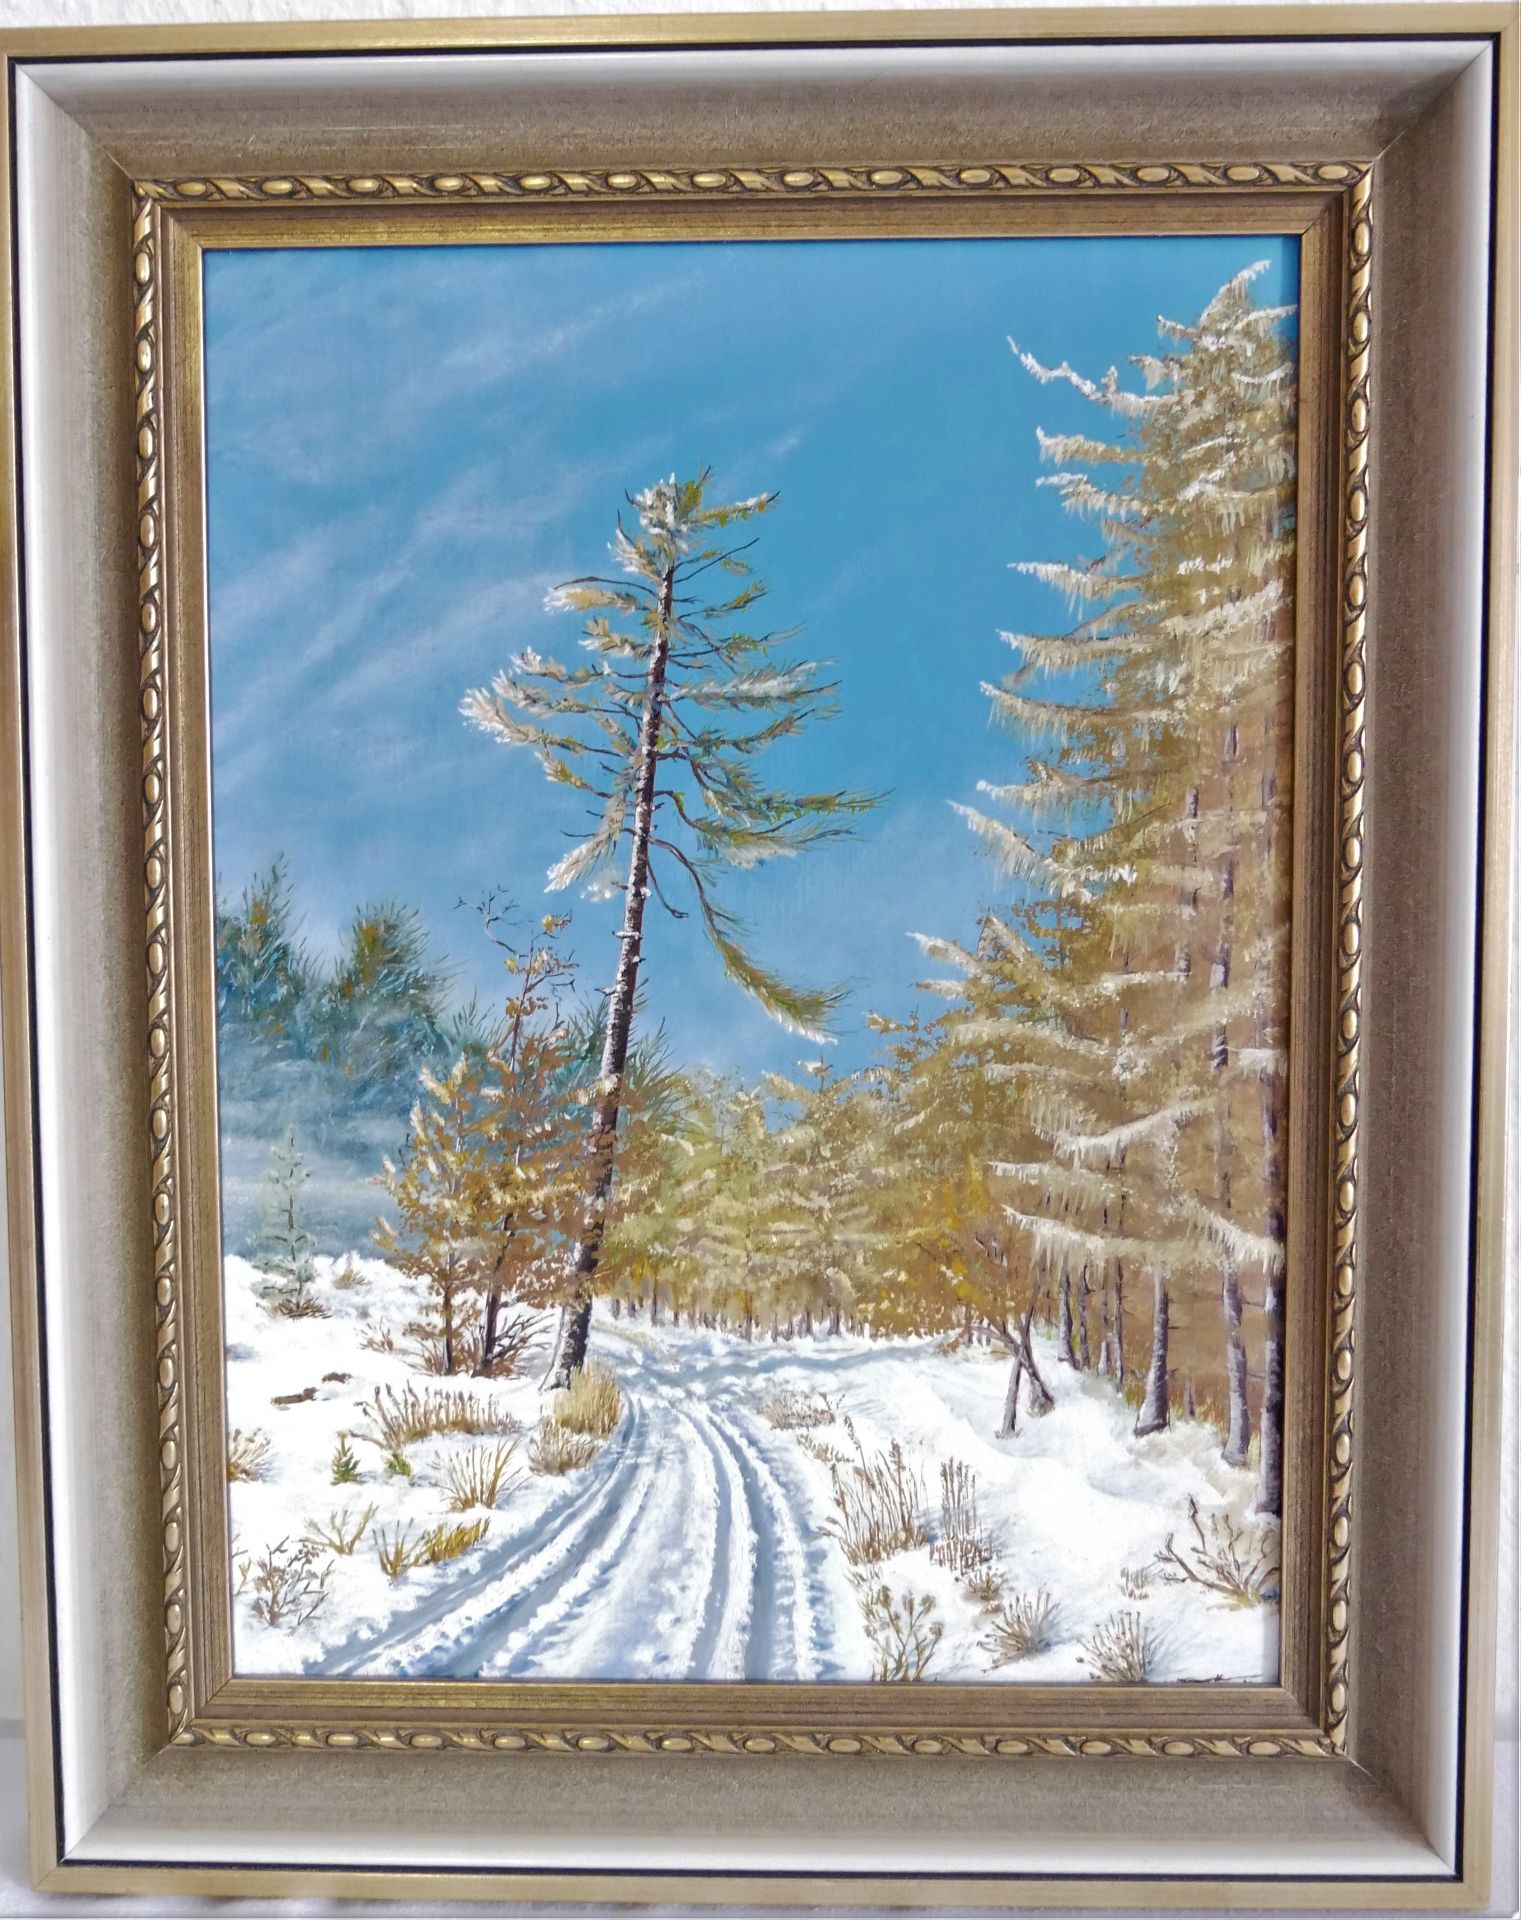 unbekannter Künstler, Ölgemälde auf Malplatte, "verschneite Winterlandschaft", Maße ca. 36 cm breit,